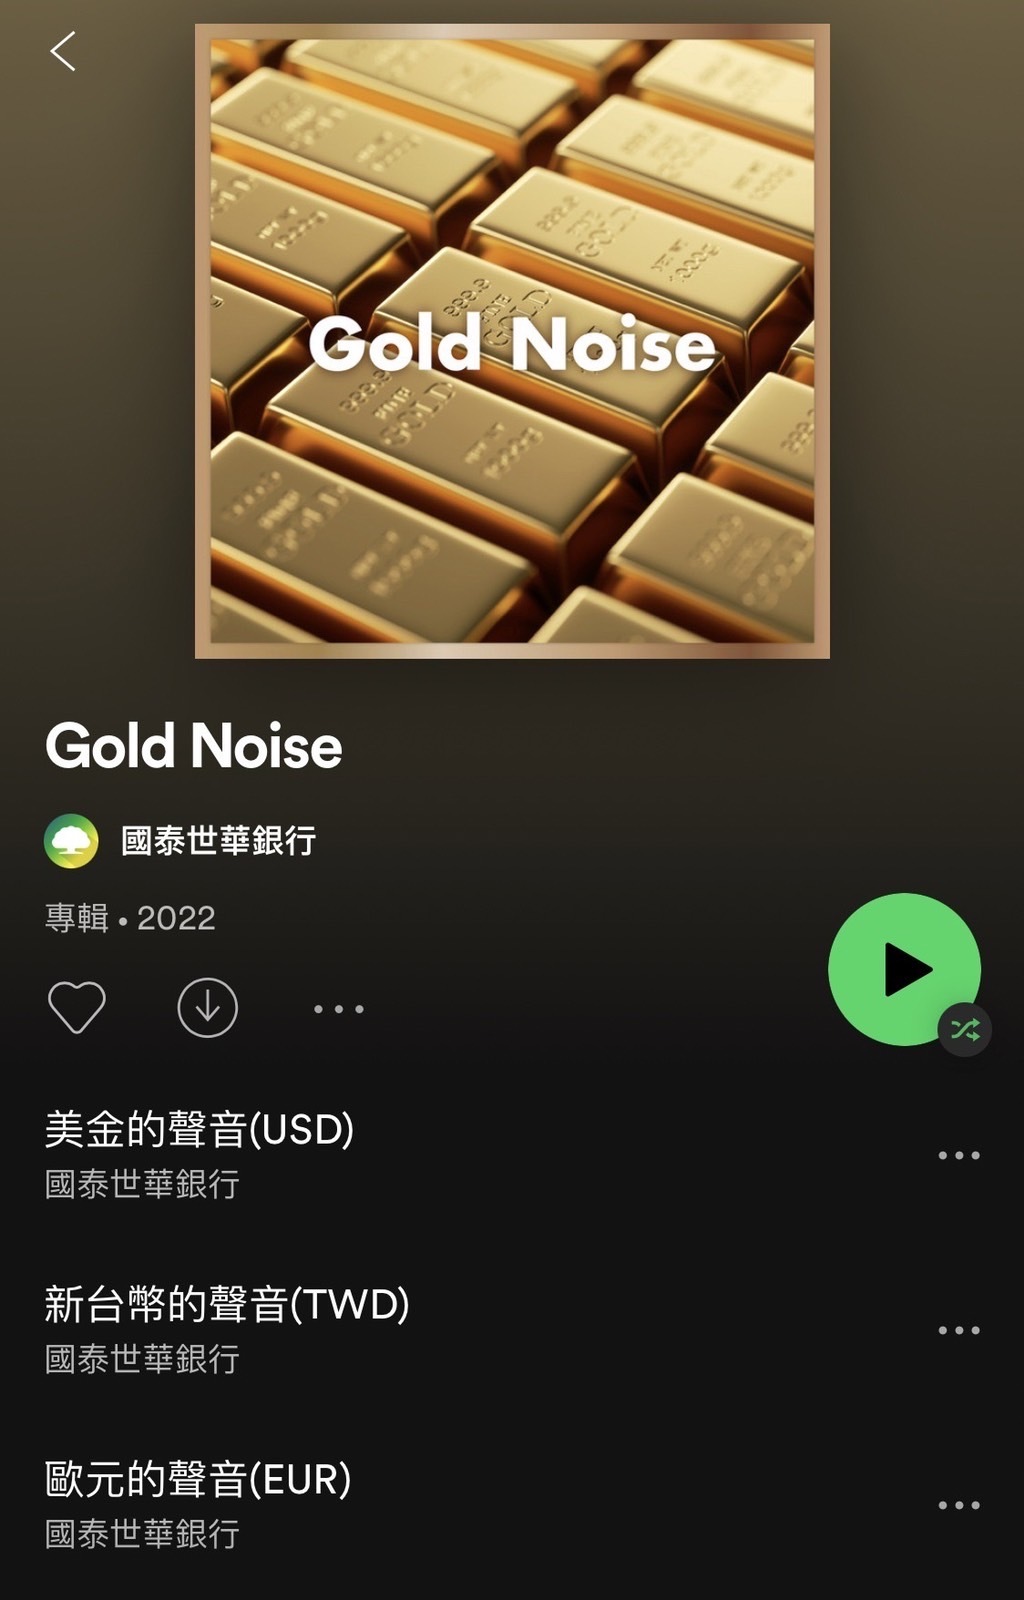 國泰世華銀行農曆春節前於官方YouTube頻道推出ㄧ系列Gold Noise歌單. 